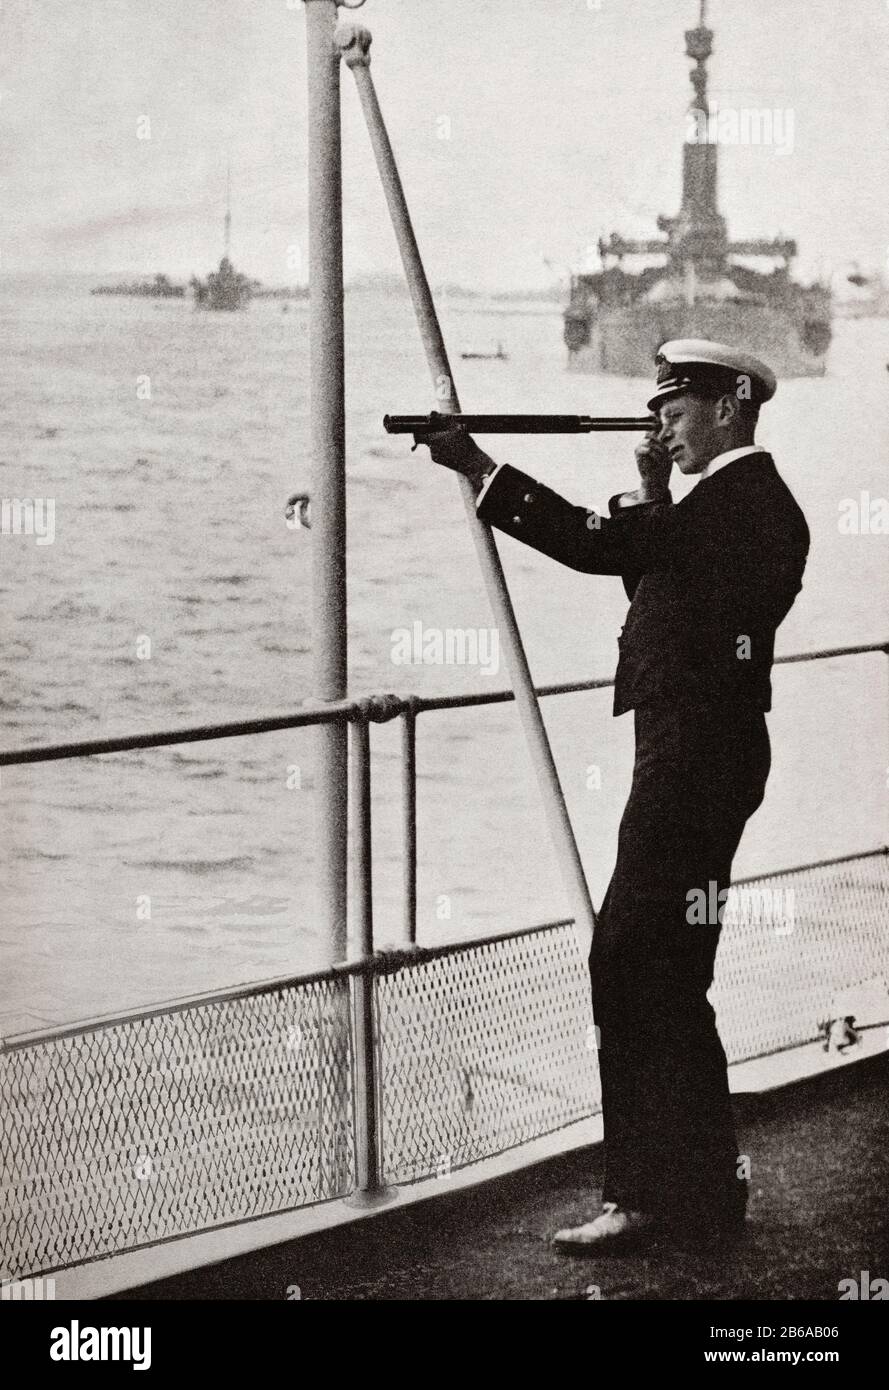 Midshipman Prince Albert, bei The Spithead Review, 1914. Prinz Albert Frederick Arthur George, Future George VI, 1895 - 1952. König des Vereinigten Königreichs und der Dominions des britischen Commonwealth. Von König Georg dem 6., veröffentlicht 1937. Stockfoto